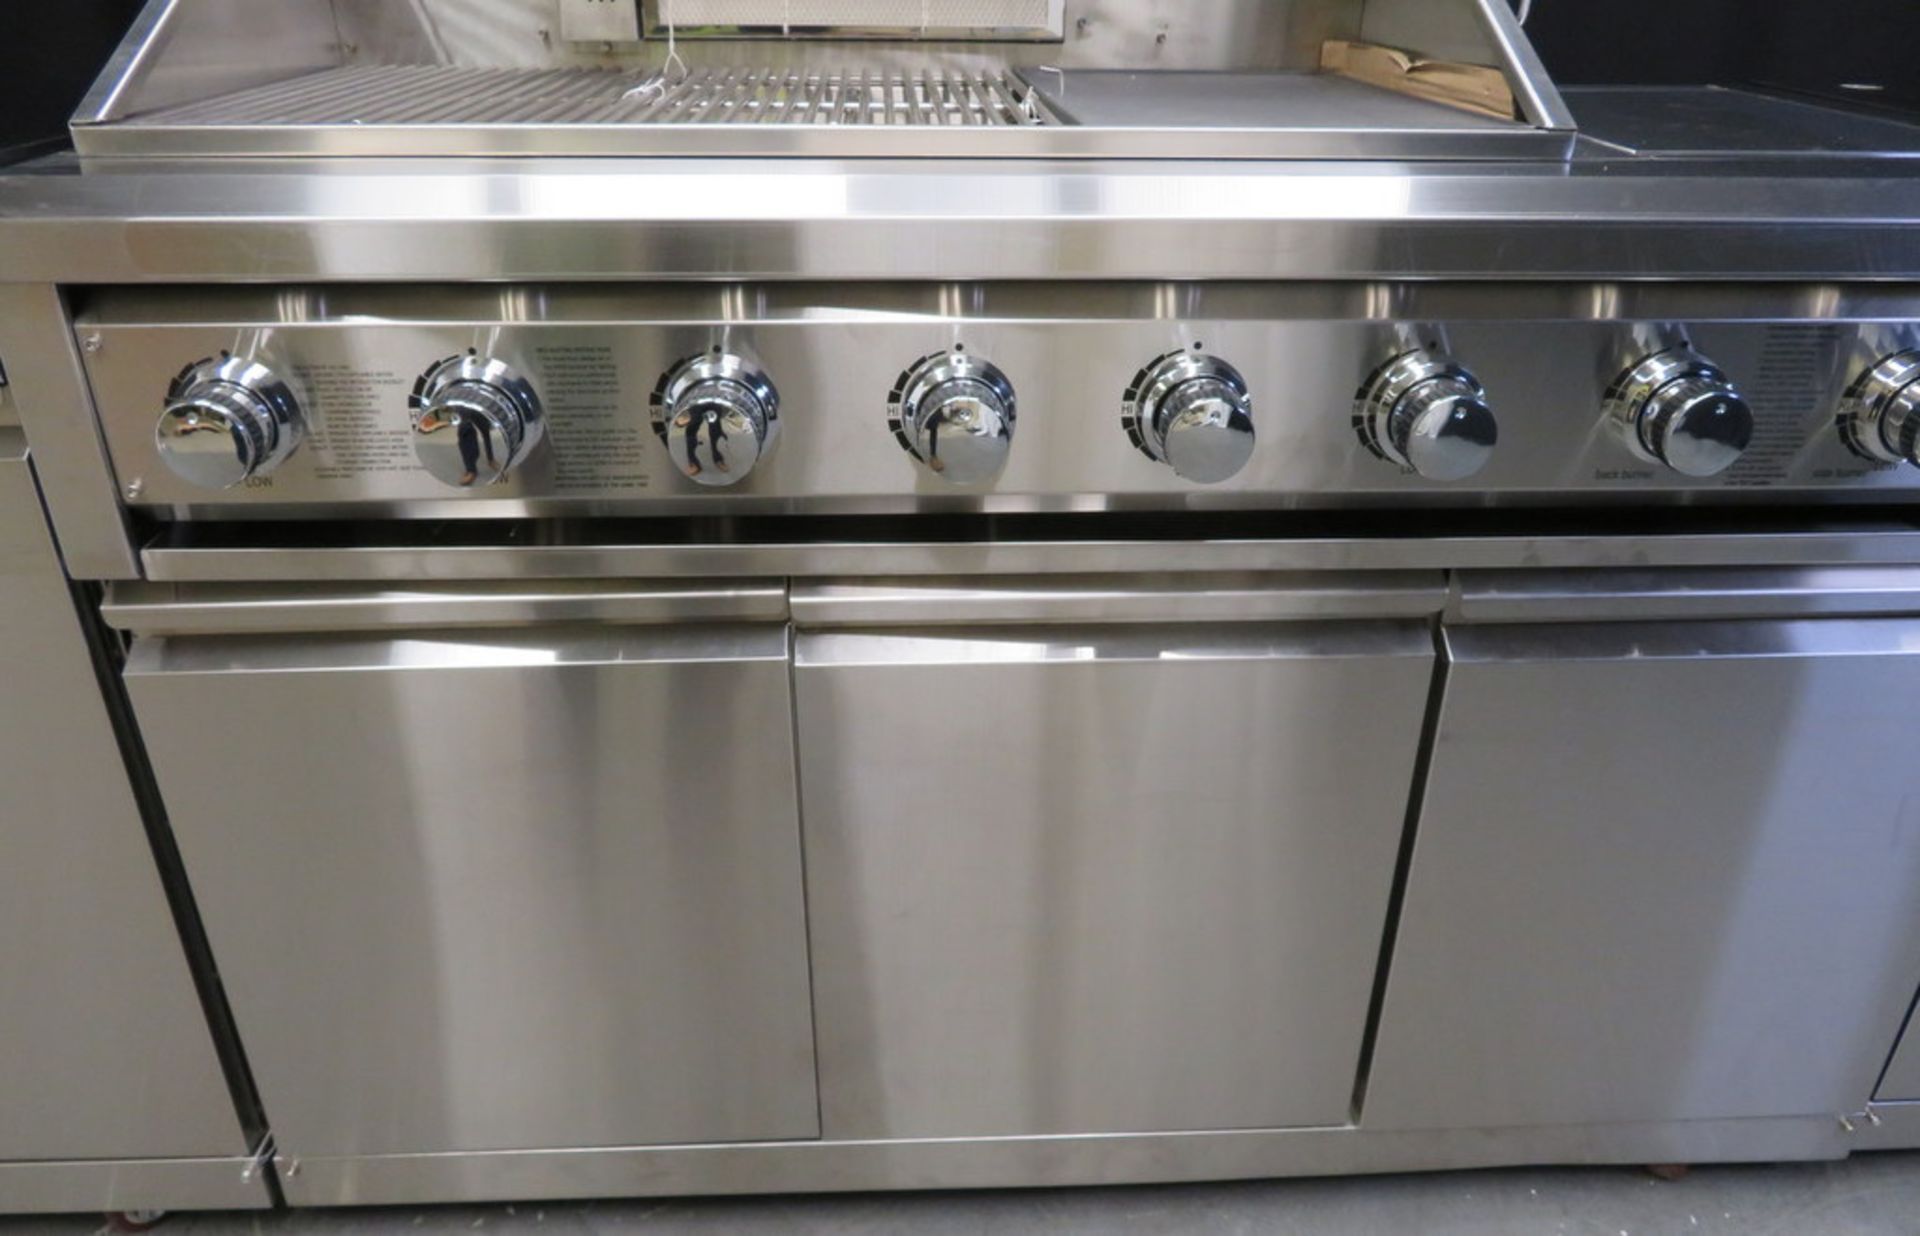 Gas 6 burner BBQ with infrared rear burner & side burner, including sink, prep table & refrigerator - Image 8 of 28